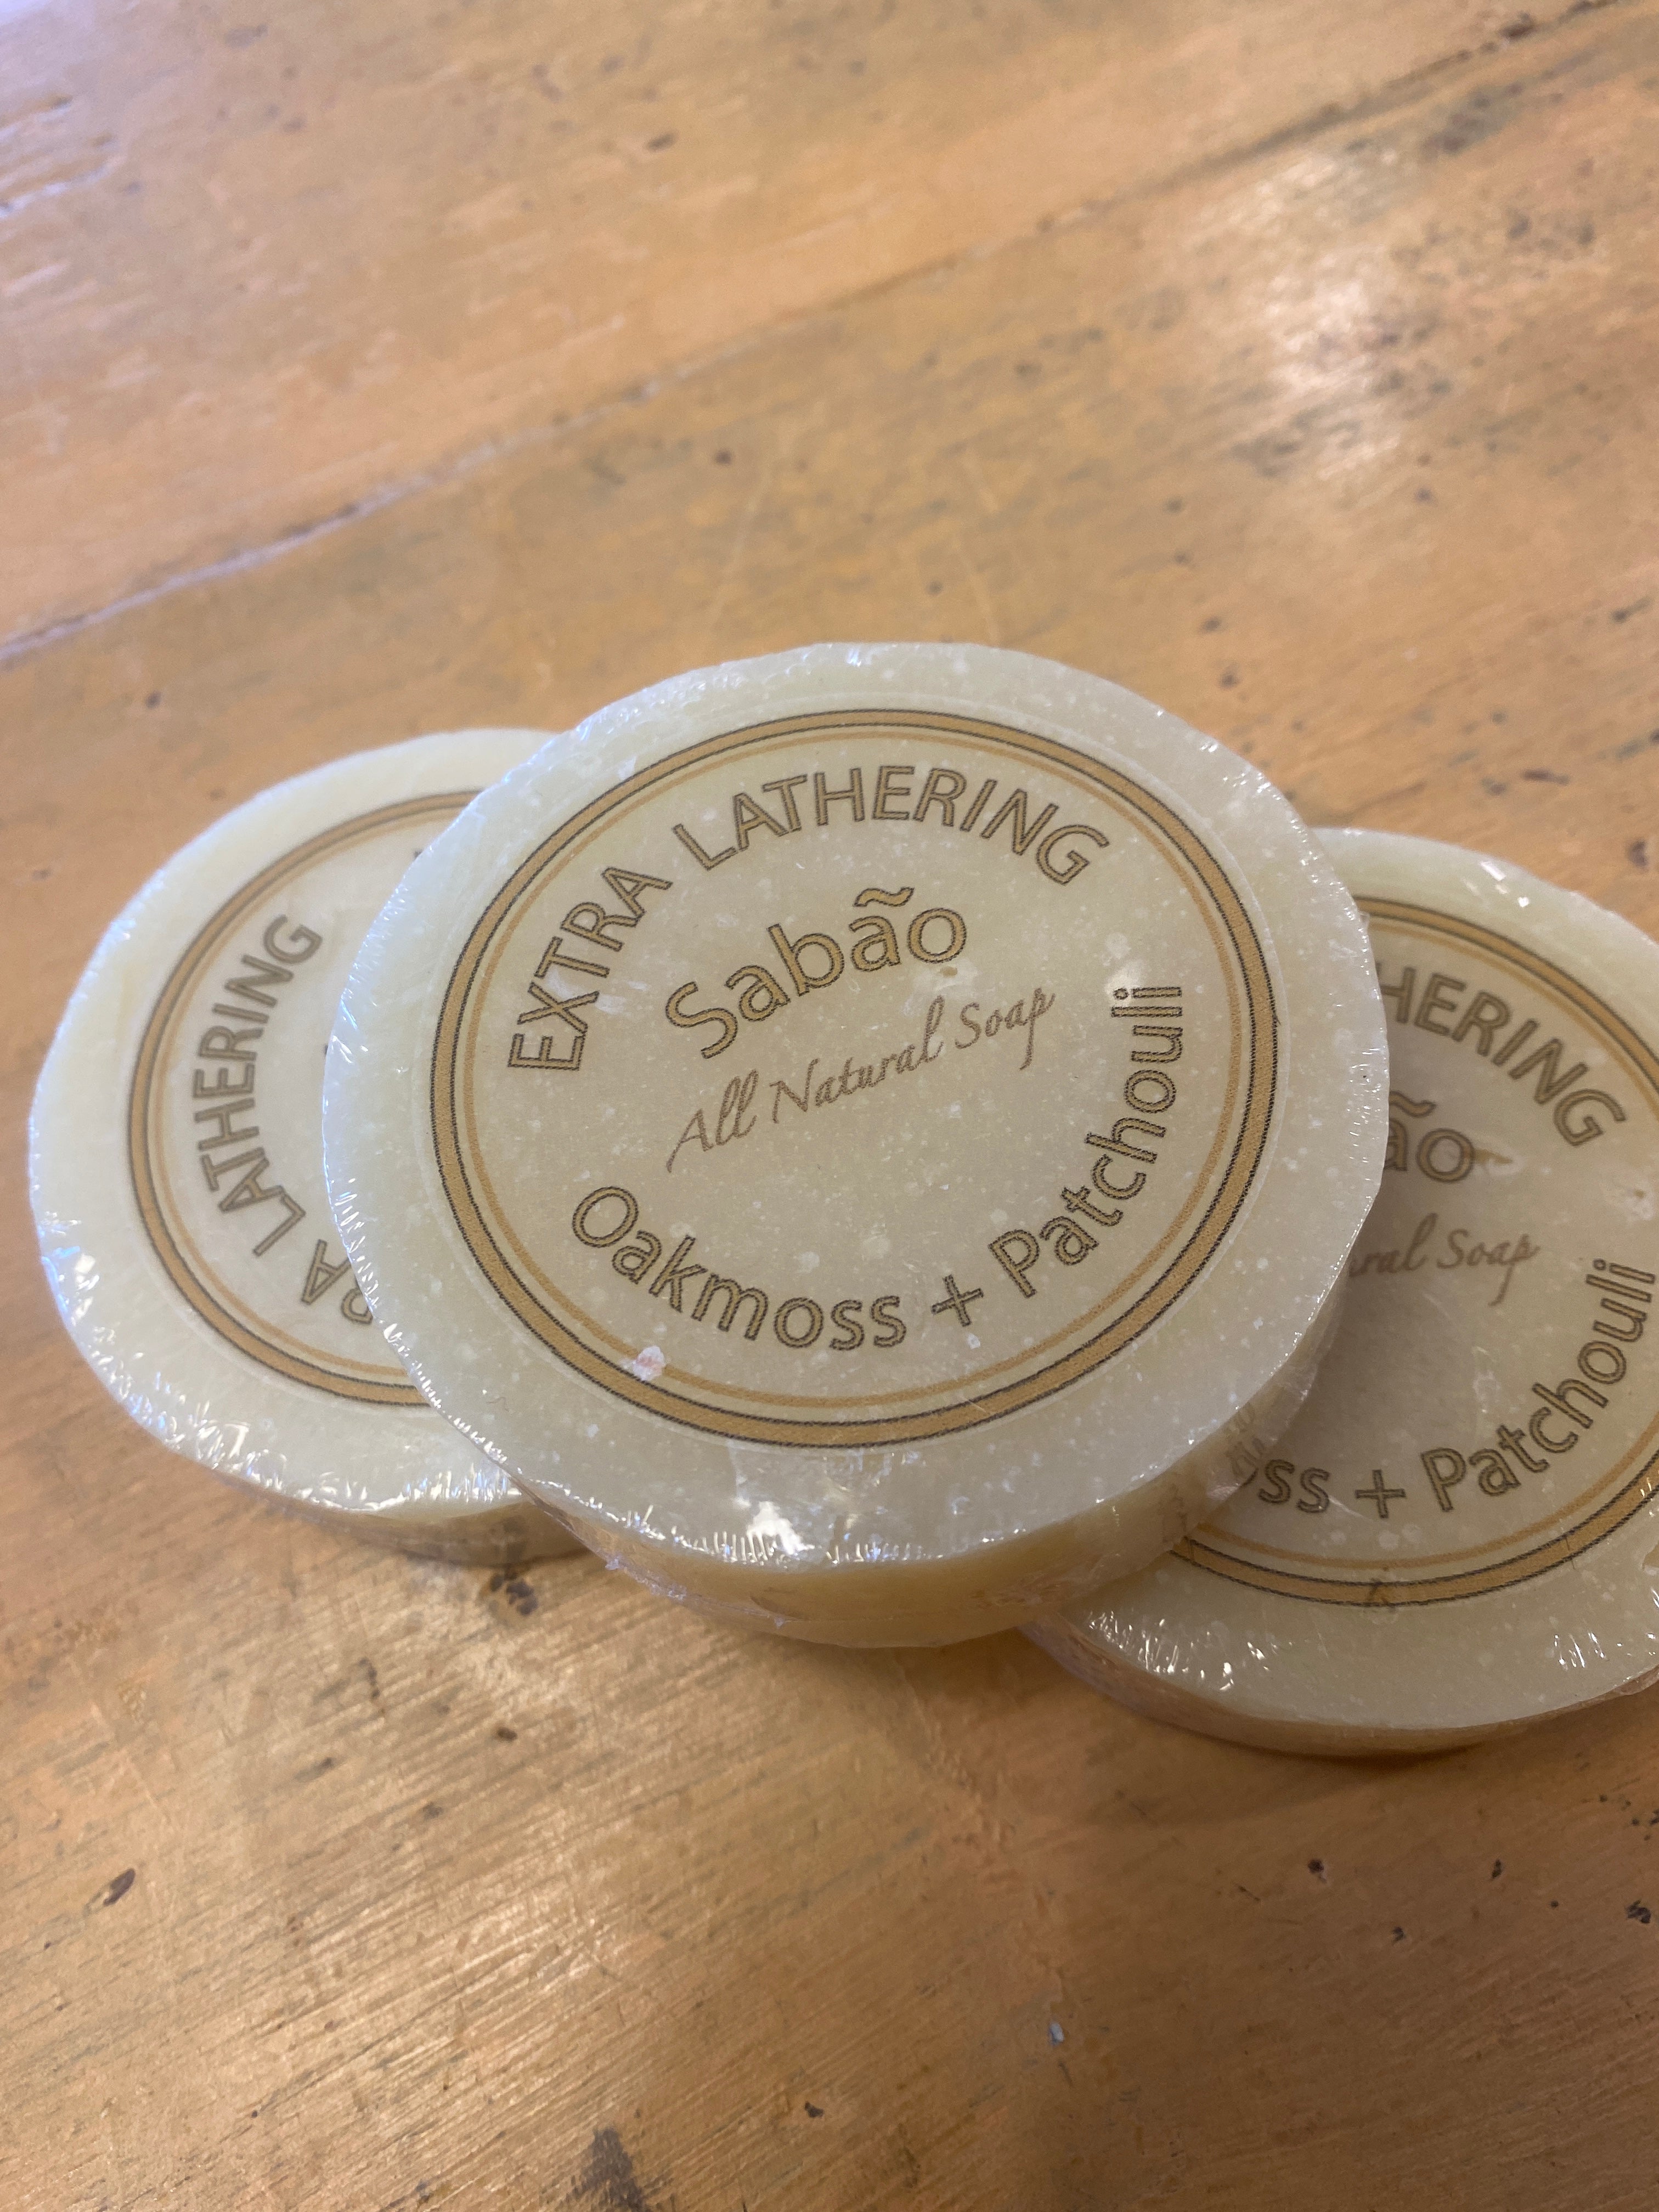 Sabao Oakmoss and Patchouli Extra Lathering Soap